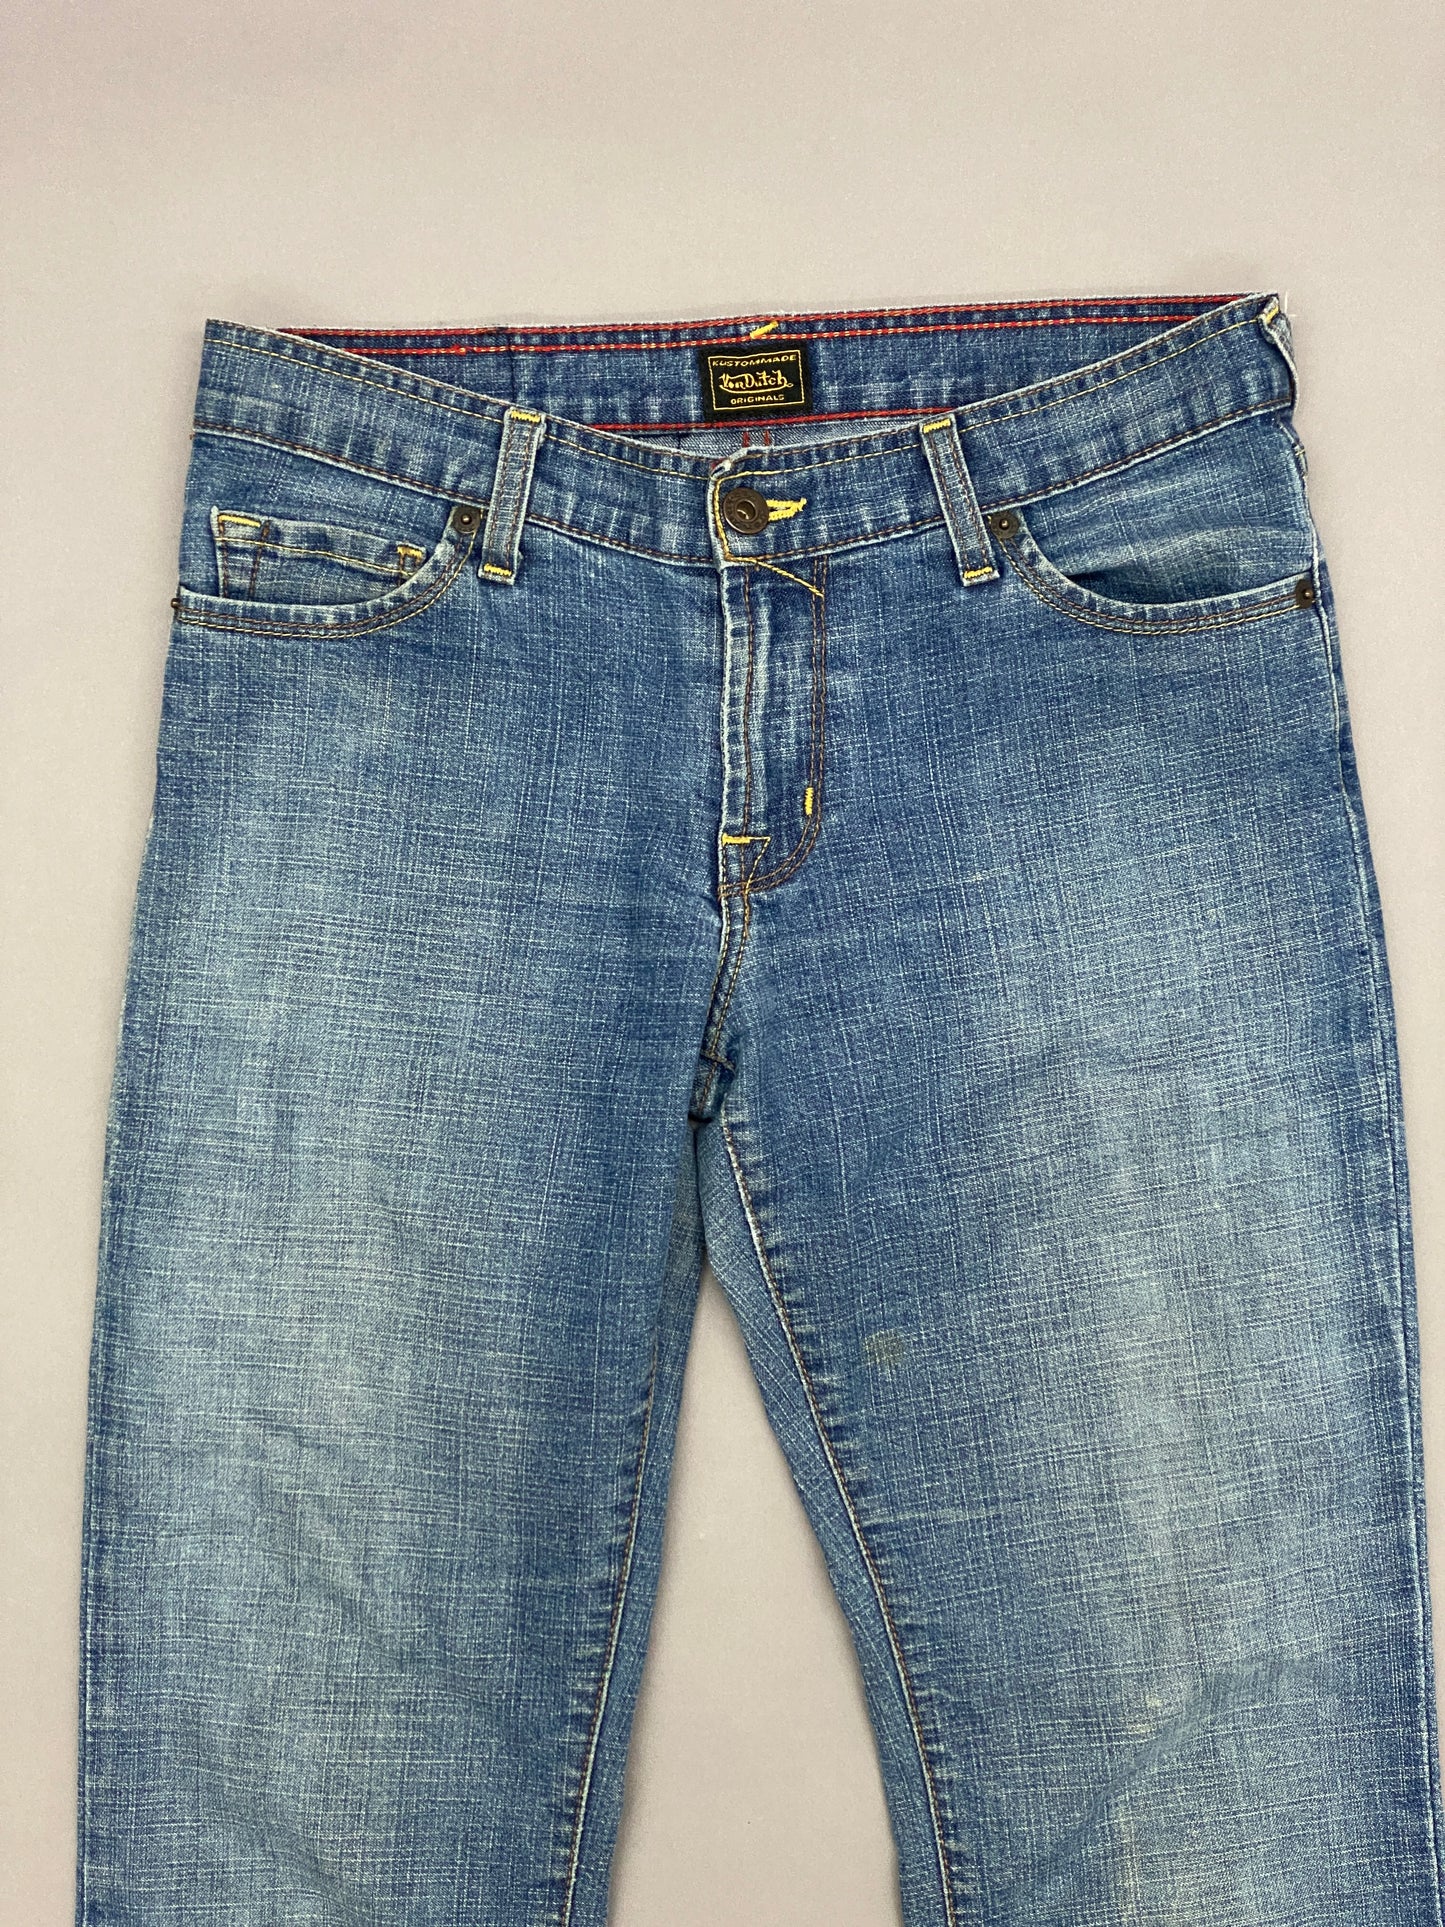 Von Dutch Patch Vintage Jeans - 27